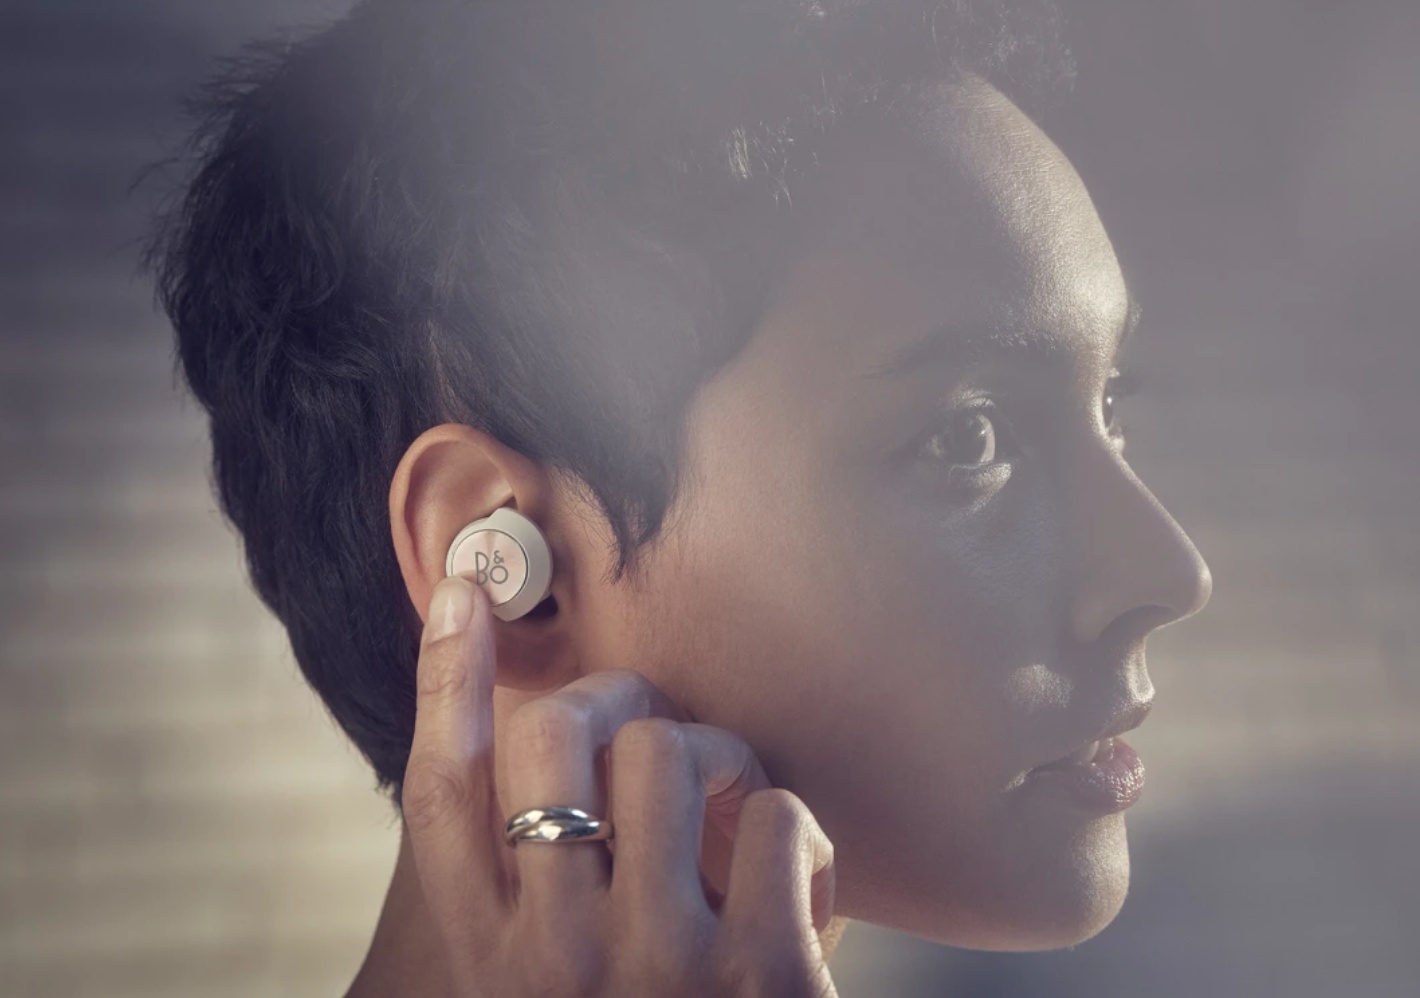 精品級音響品牌 B&O 推出自家首款具主動降噪的真無線藍牙耳機 售價 399 歐元